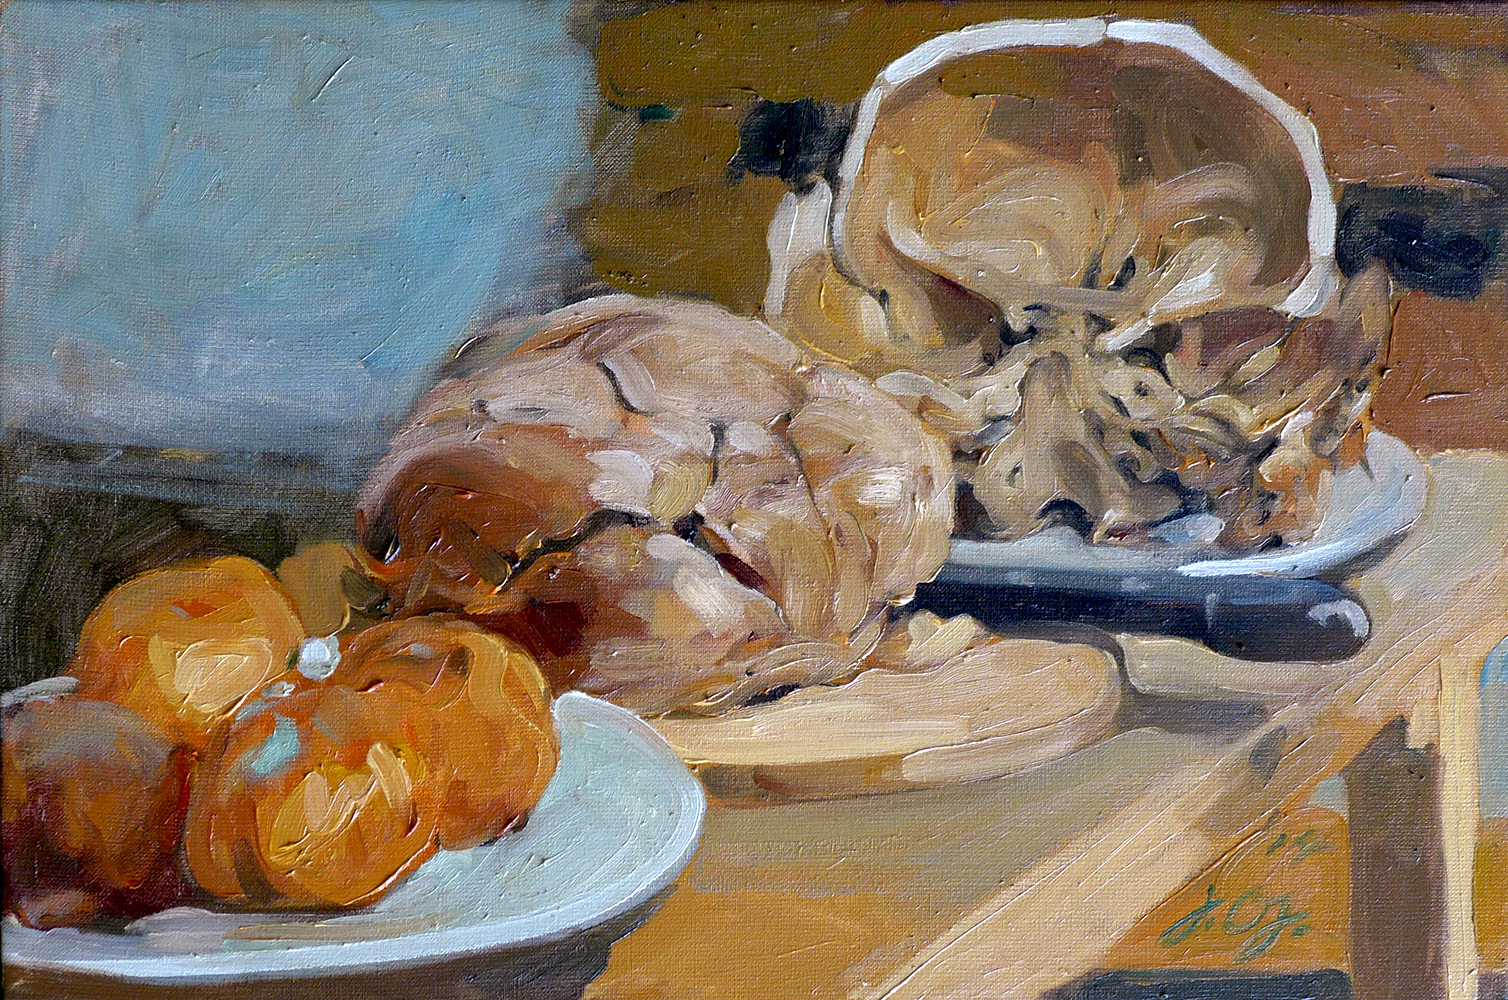 Orangen, Brot und Schädel (von innen) erstellt 2014